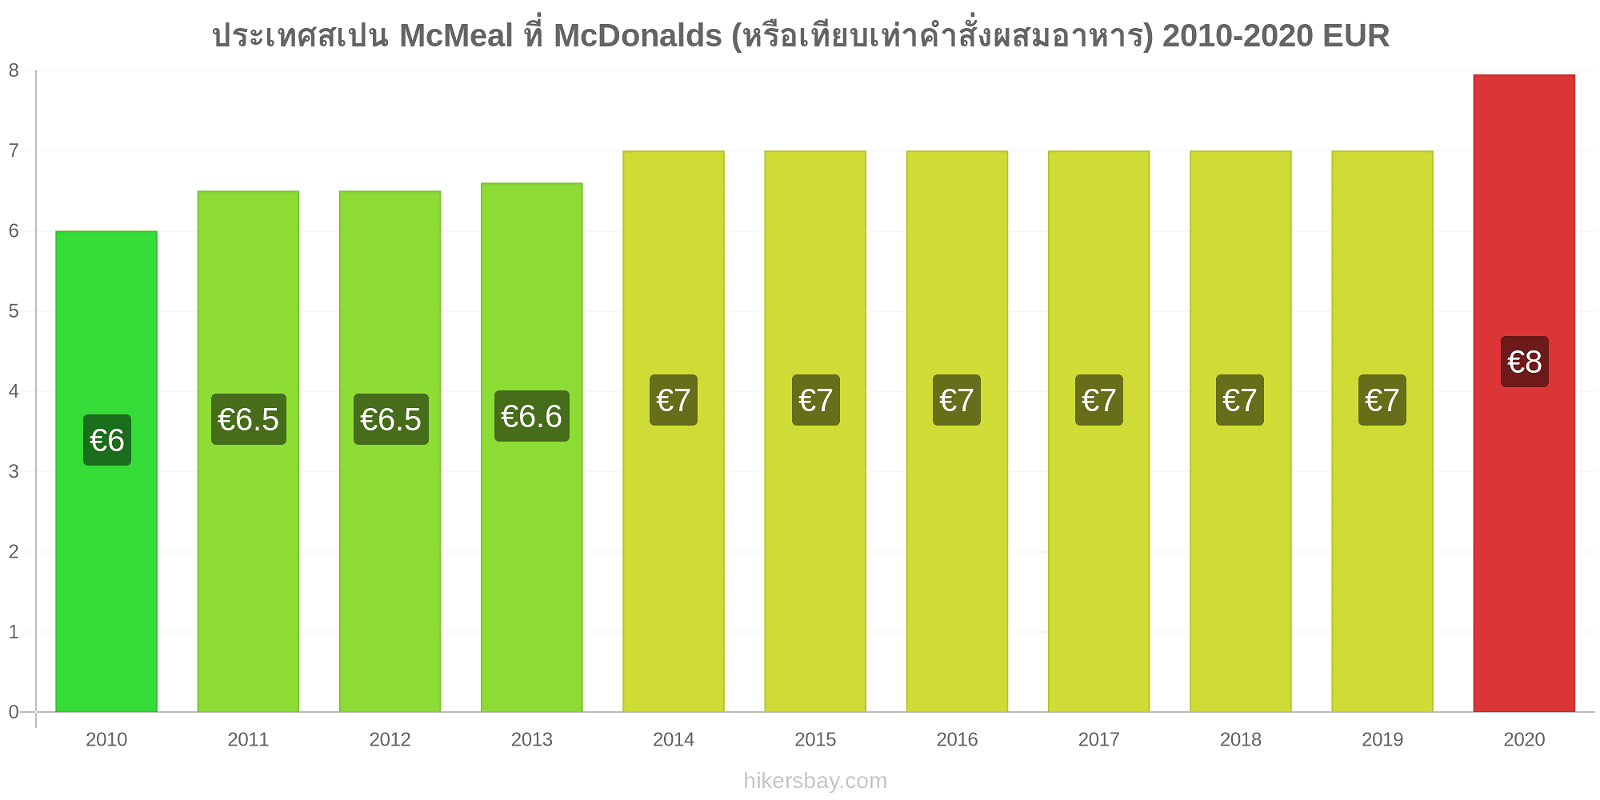 ประเทศสเปน การเปลี่ยนแปลงราคา McMeal ที่ McDonalds (หรือเทียบเท่าคำสั่งผสมอาหาร) hikersbay.com